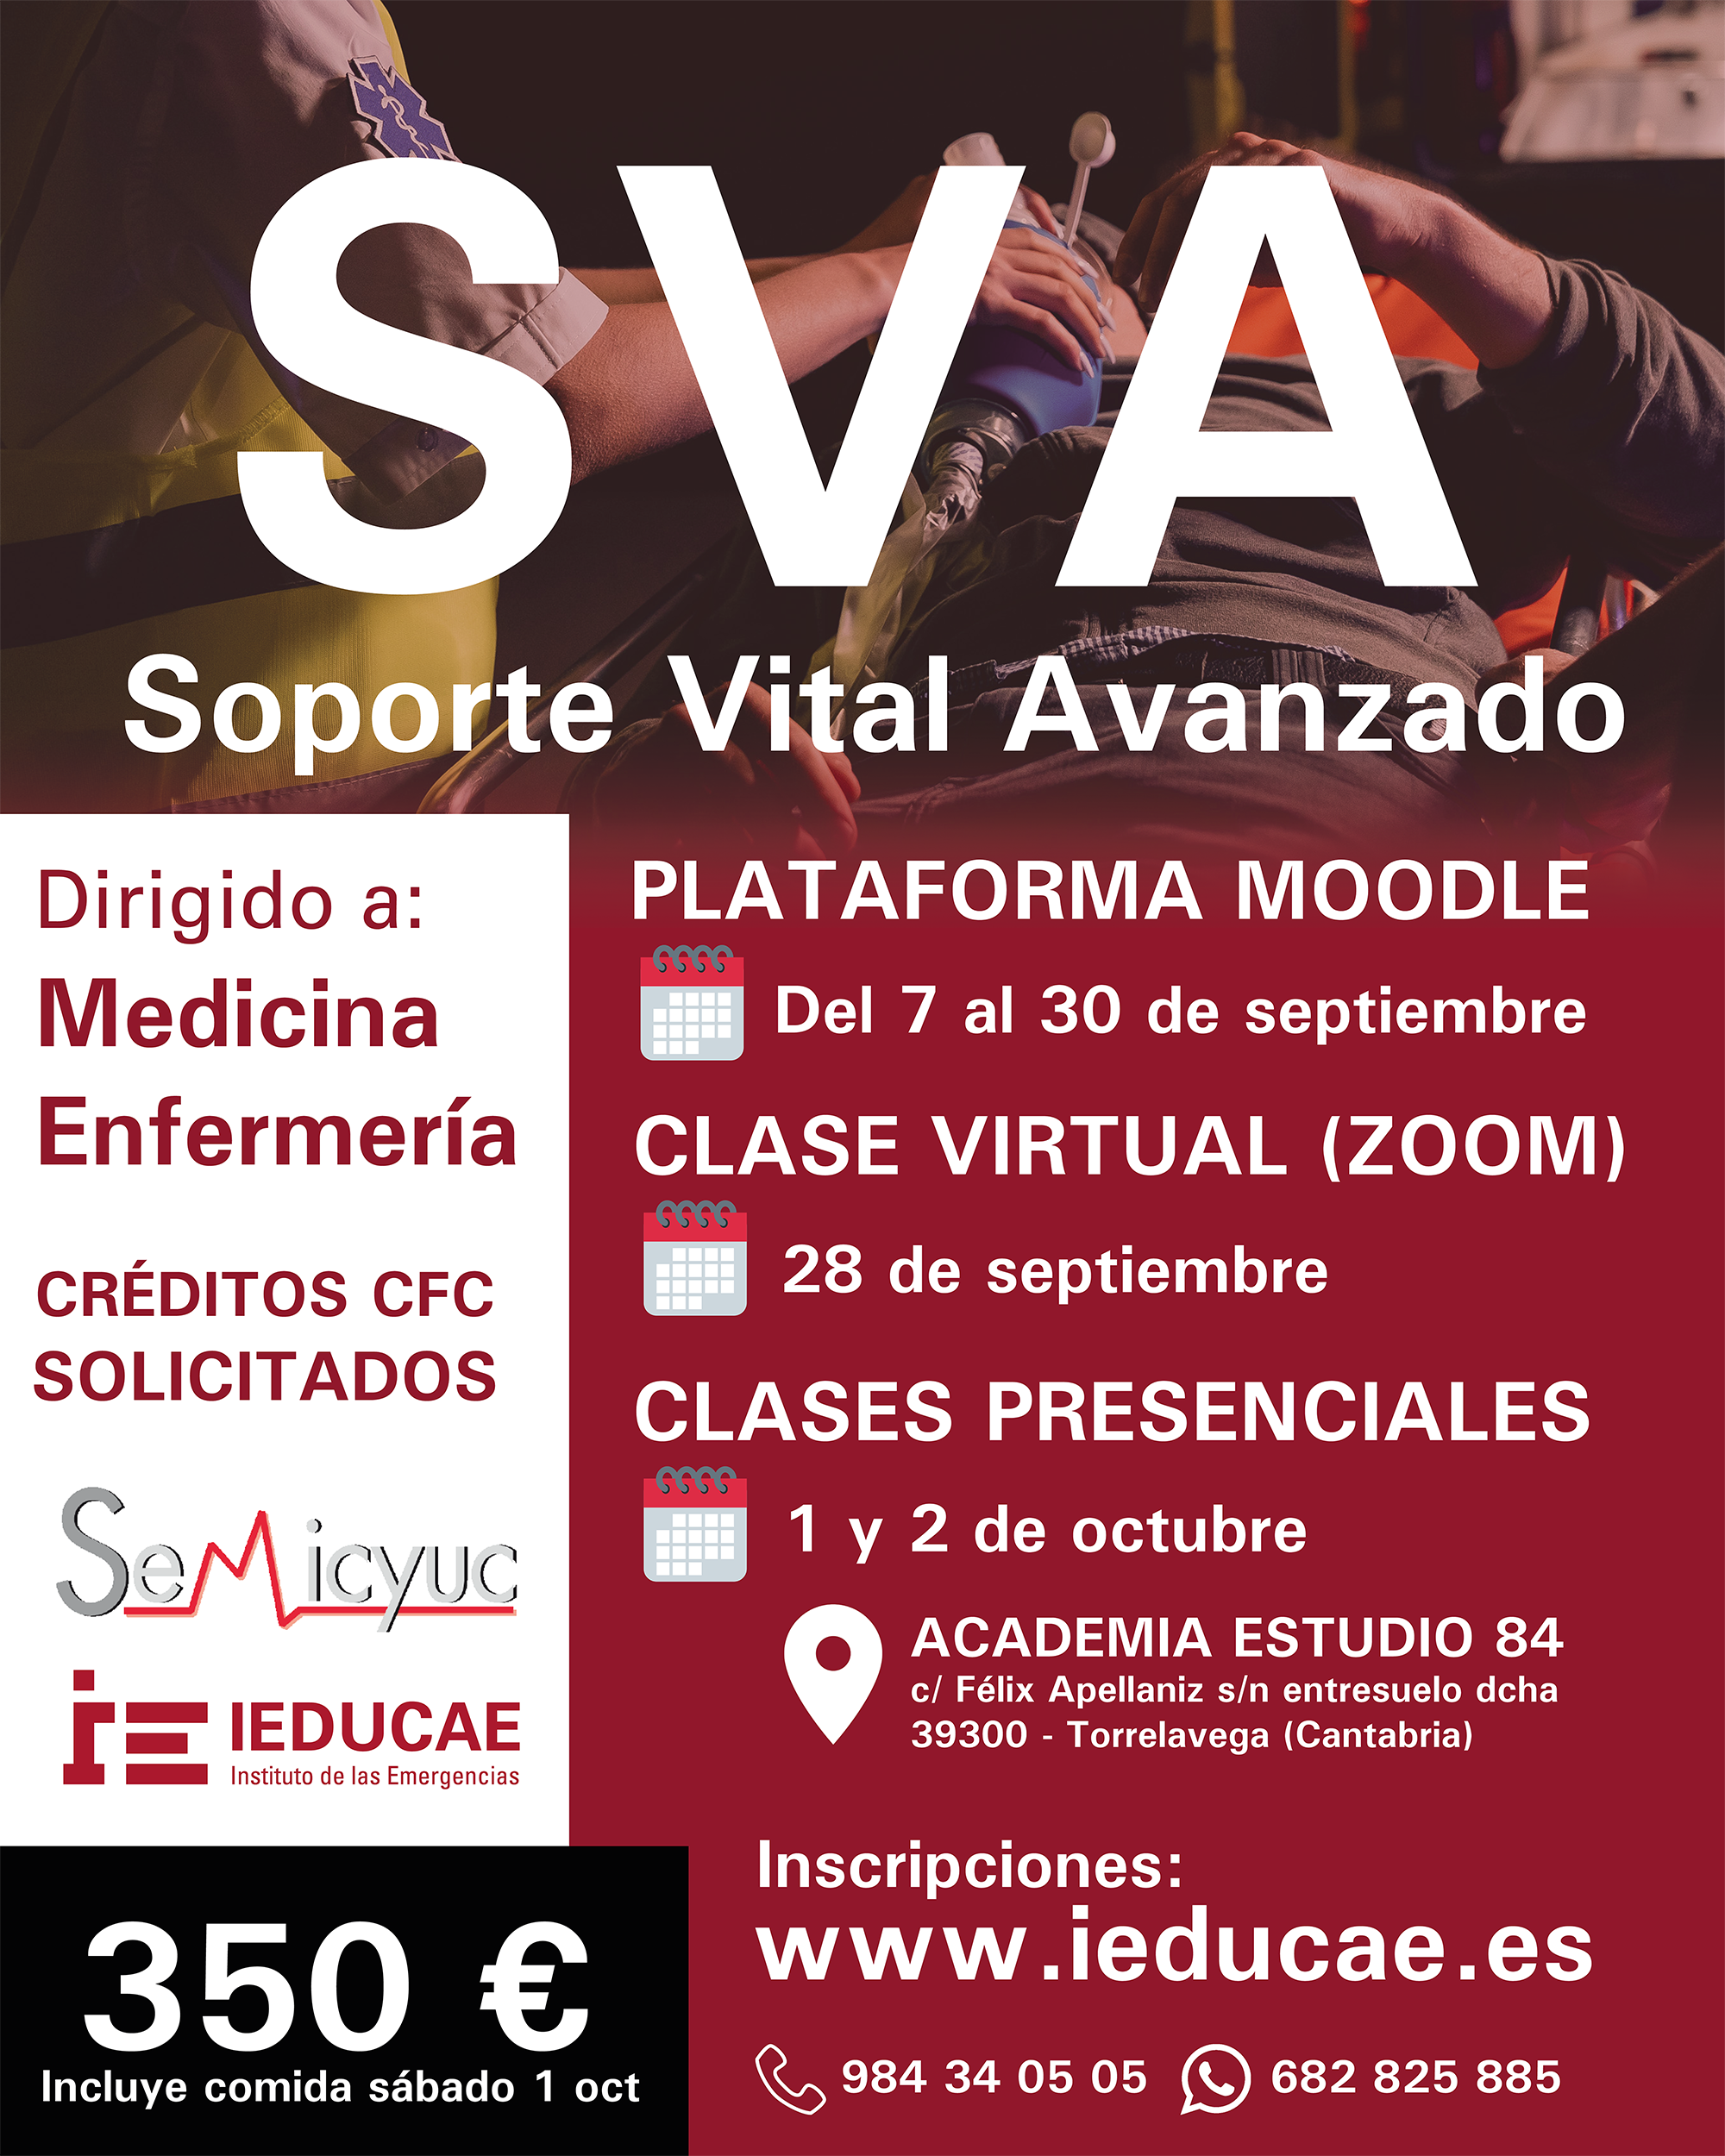 Nuevo curso Soporte Vital Avanzado en Torrelavega